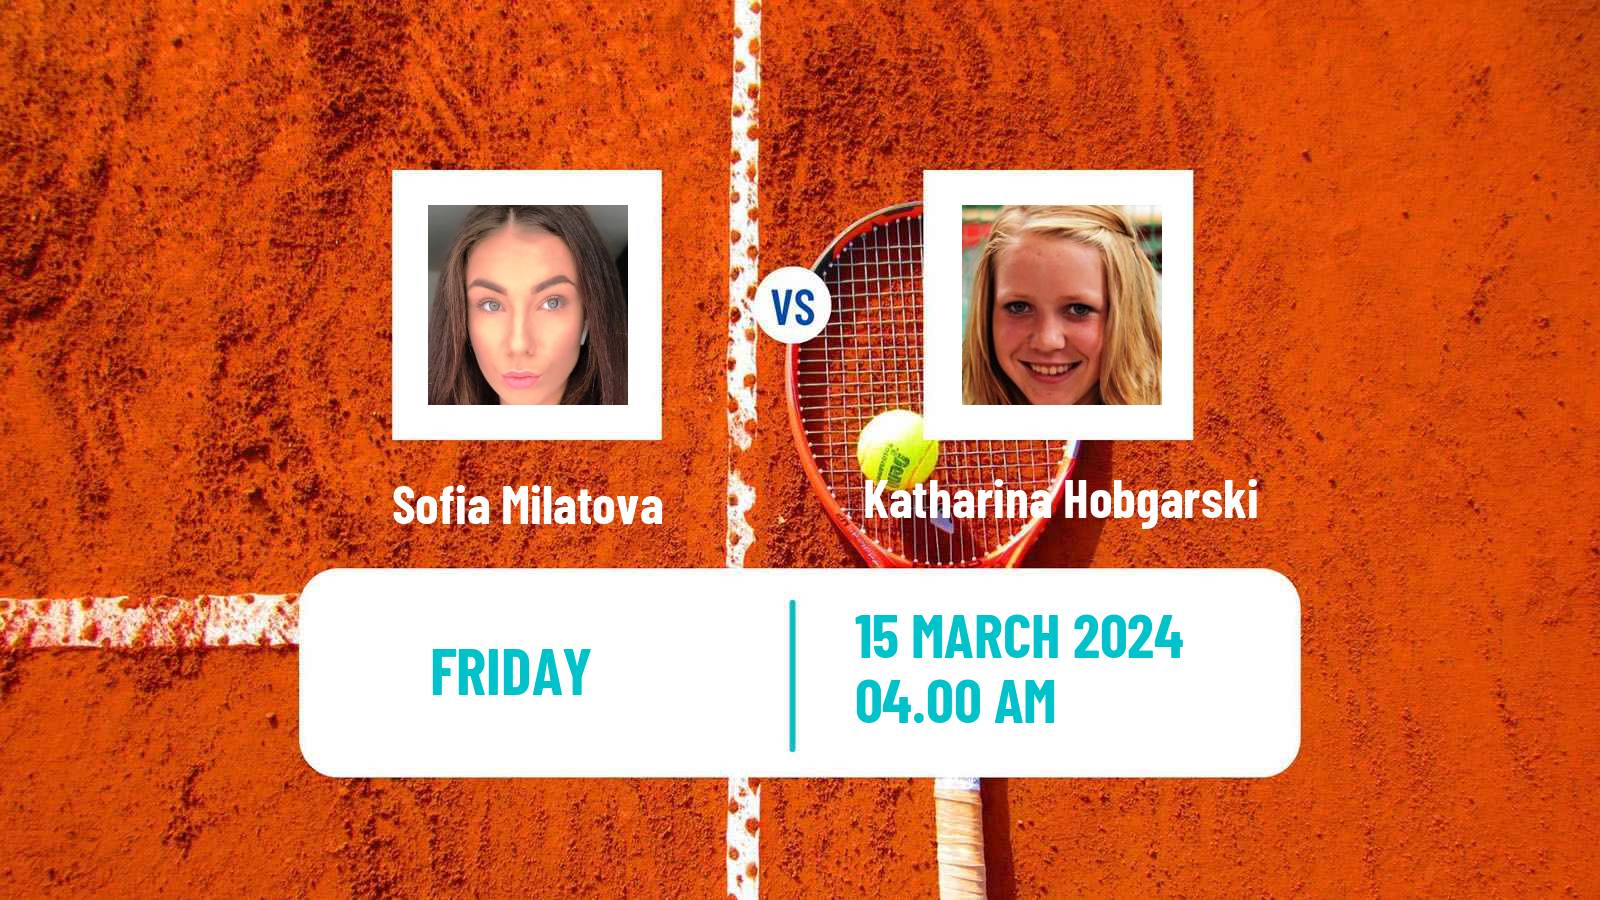 Tennis ITF W15 Heraklion 2 Women Sofia Milatova - Katharina Hobgarski